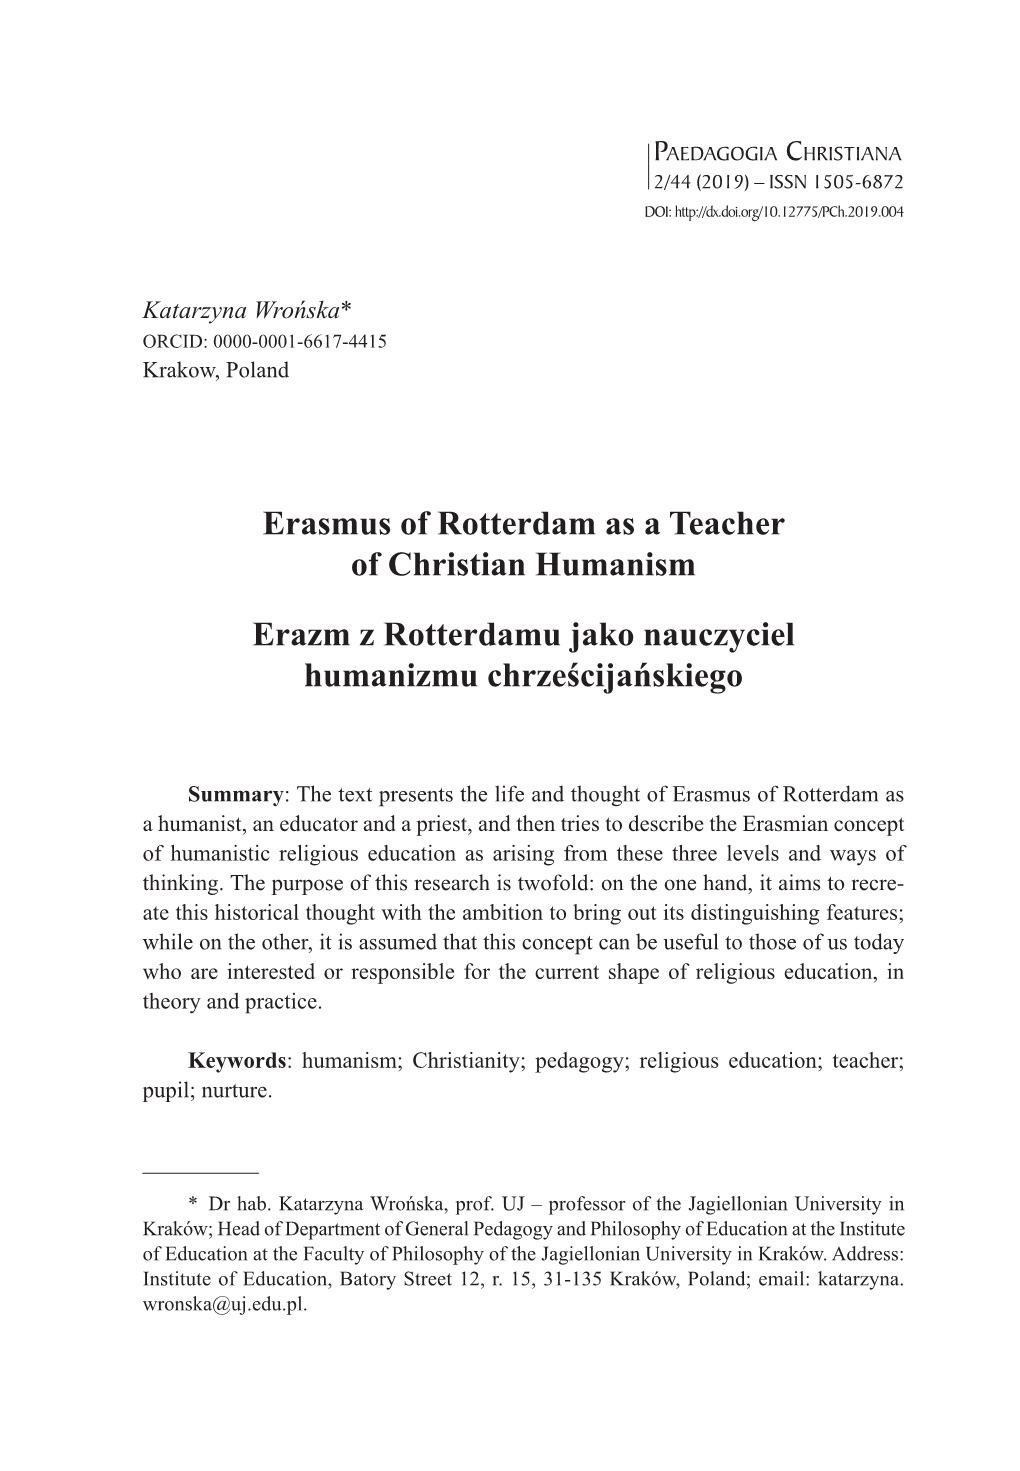 Erasmus of Rotterdam As a Teacher of Christian Humanism